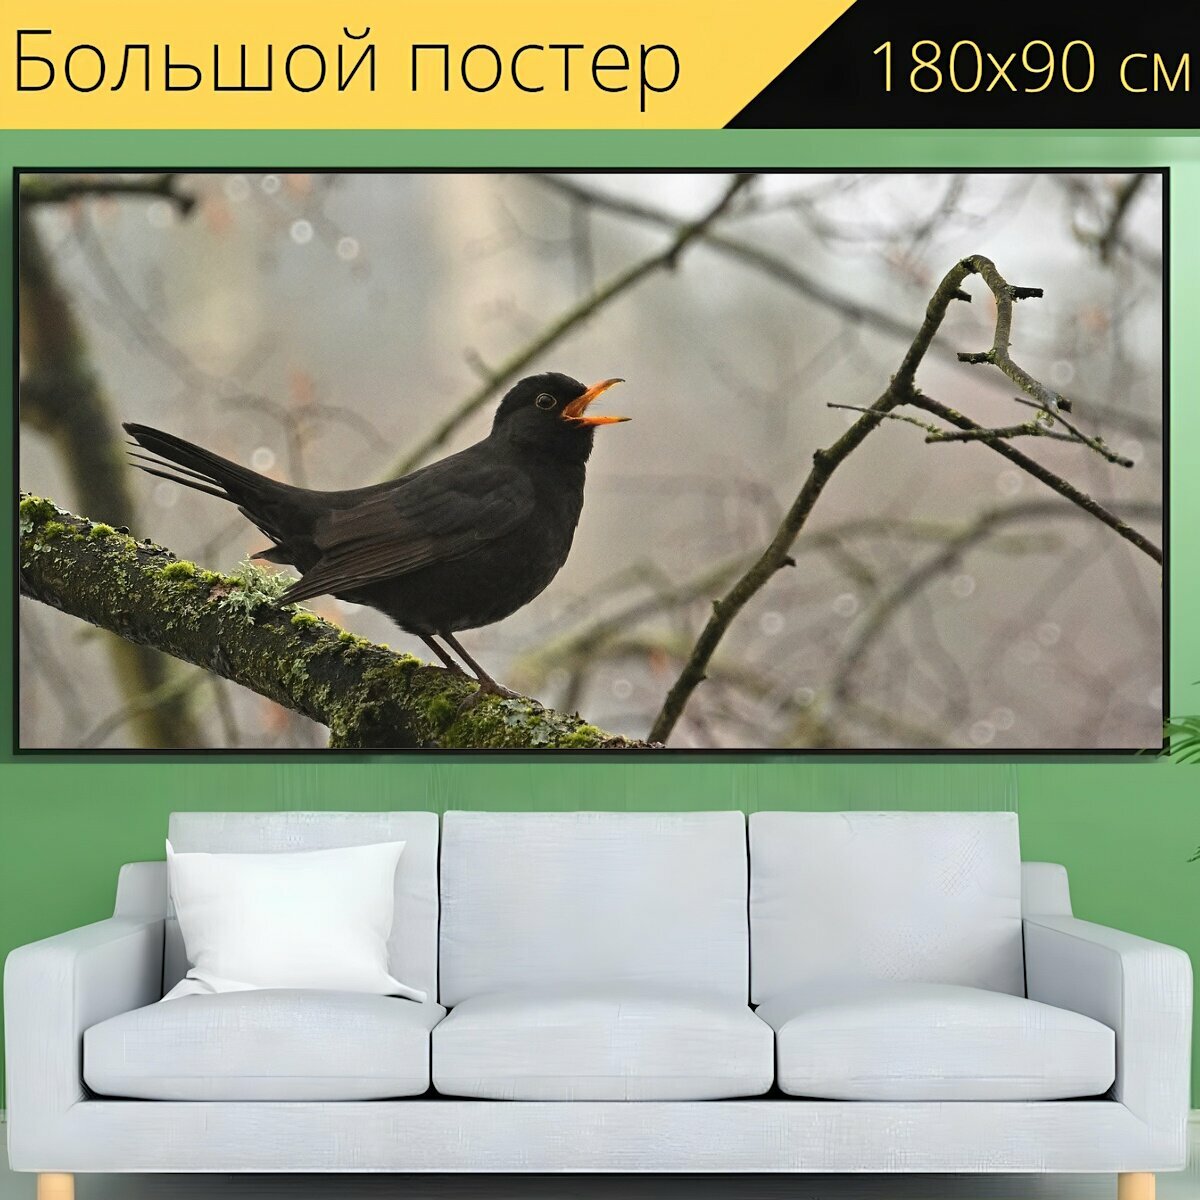 Большой постер "Птица, черный дрозд, филиал" 180 x 90 см. для интерьера